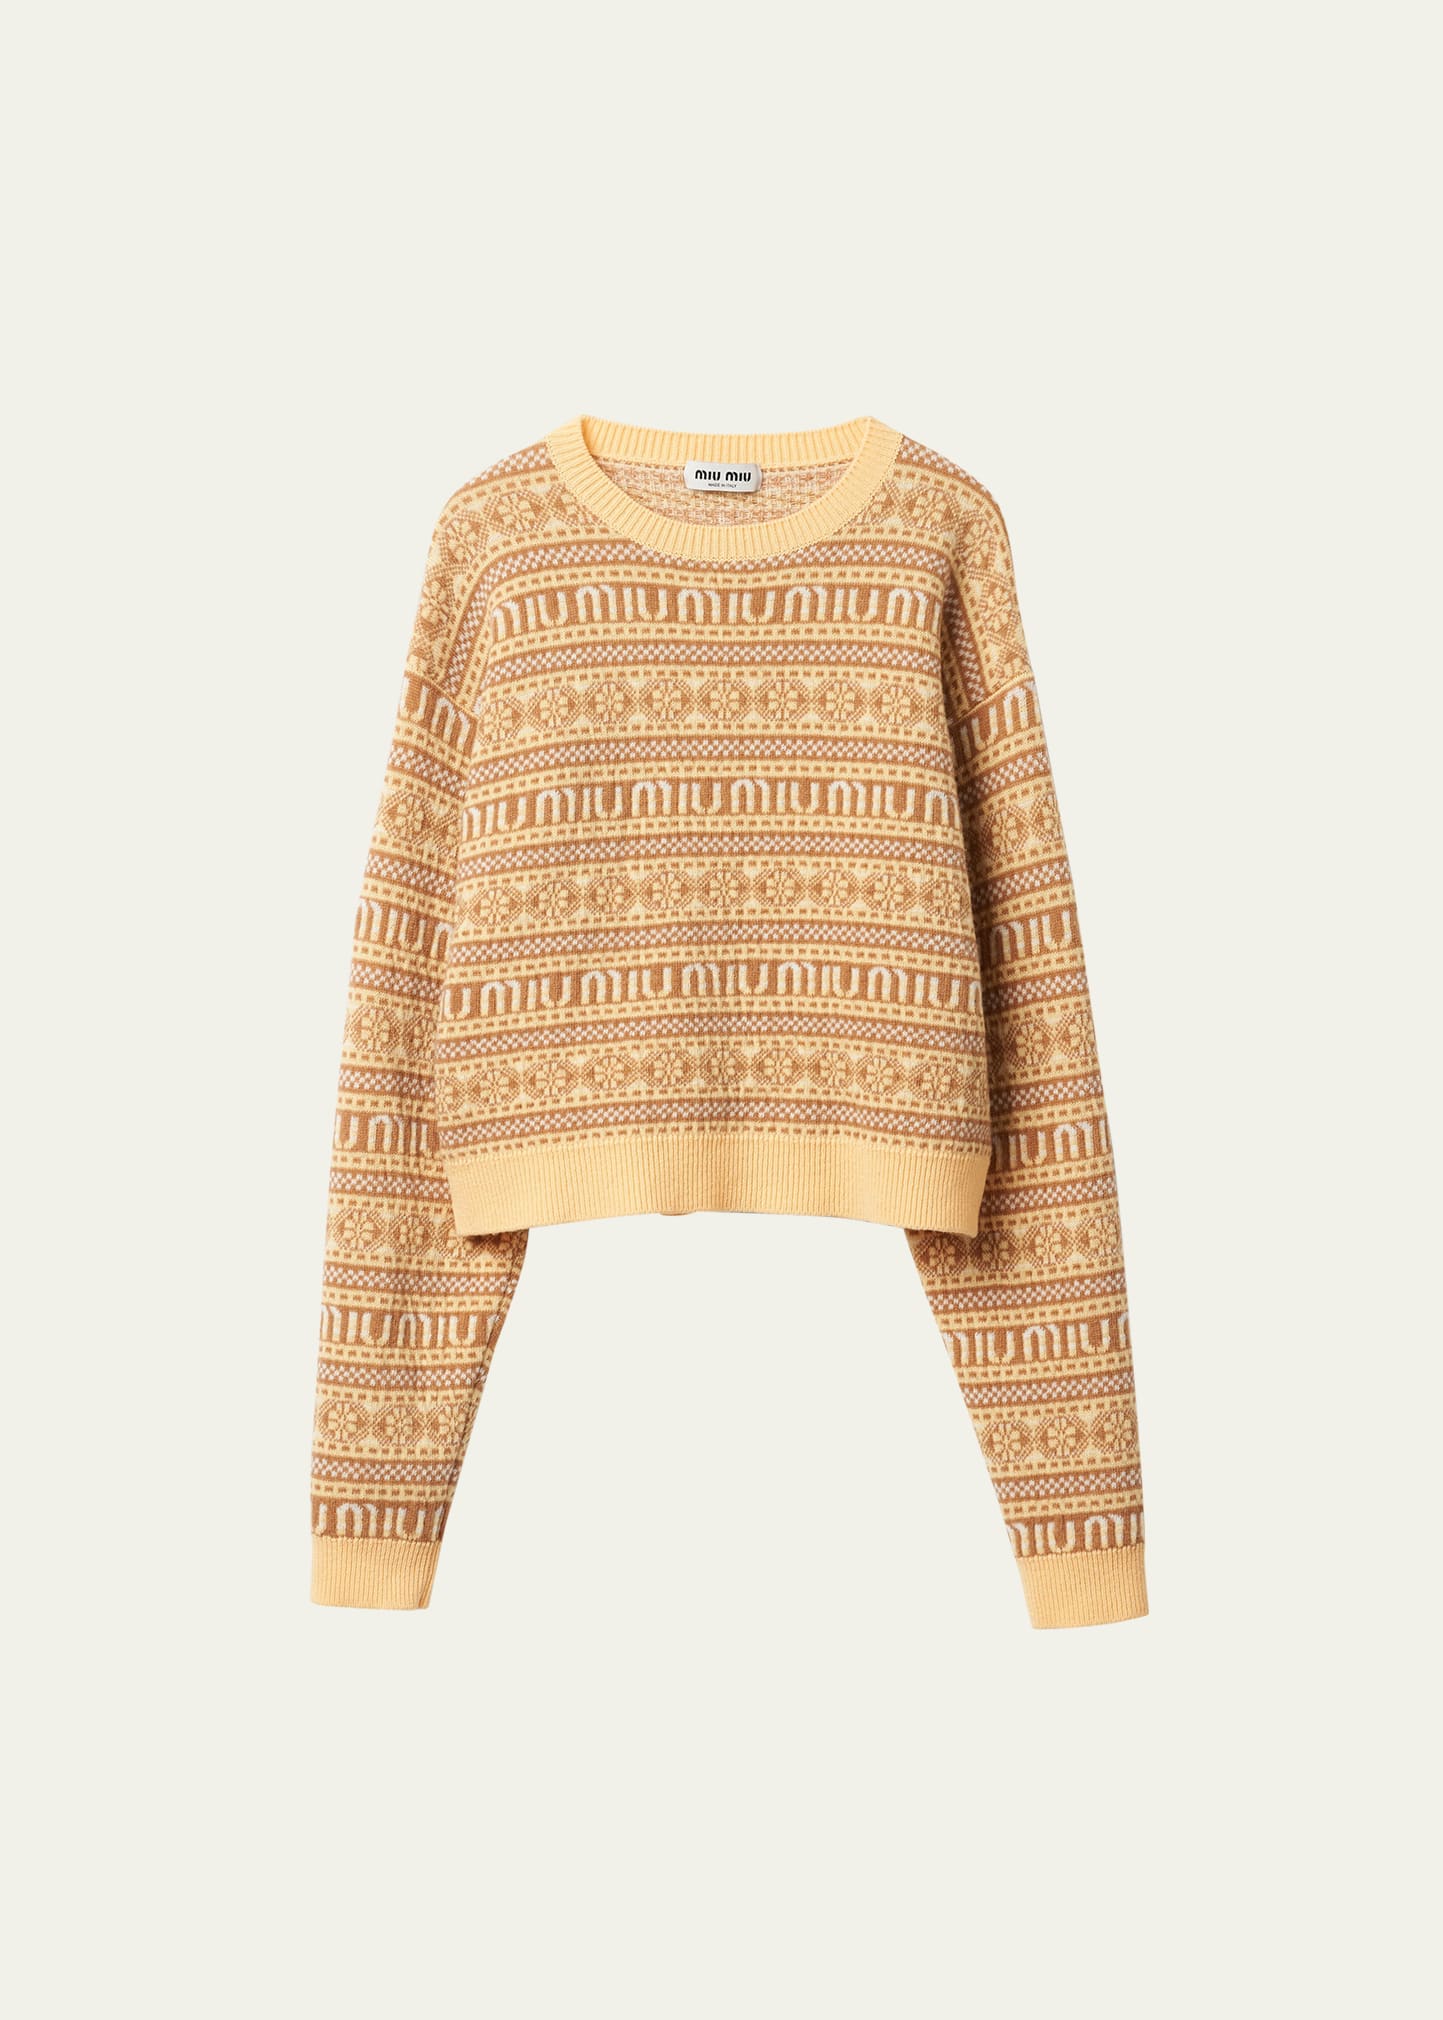 Miu Miu Wool Sweater In F0010 Giallo